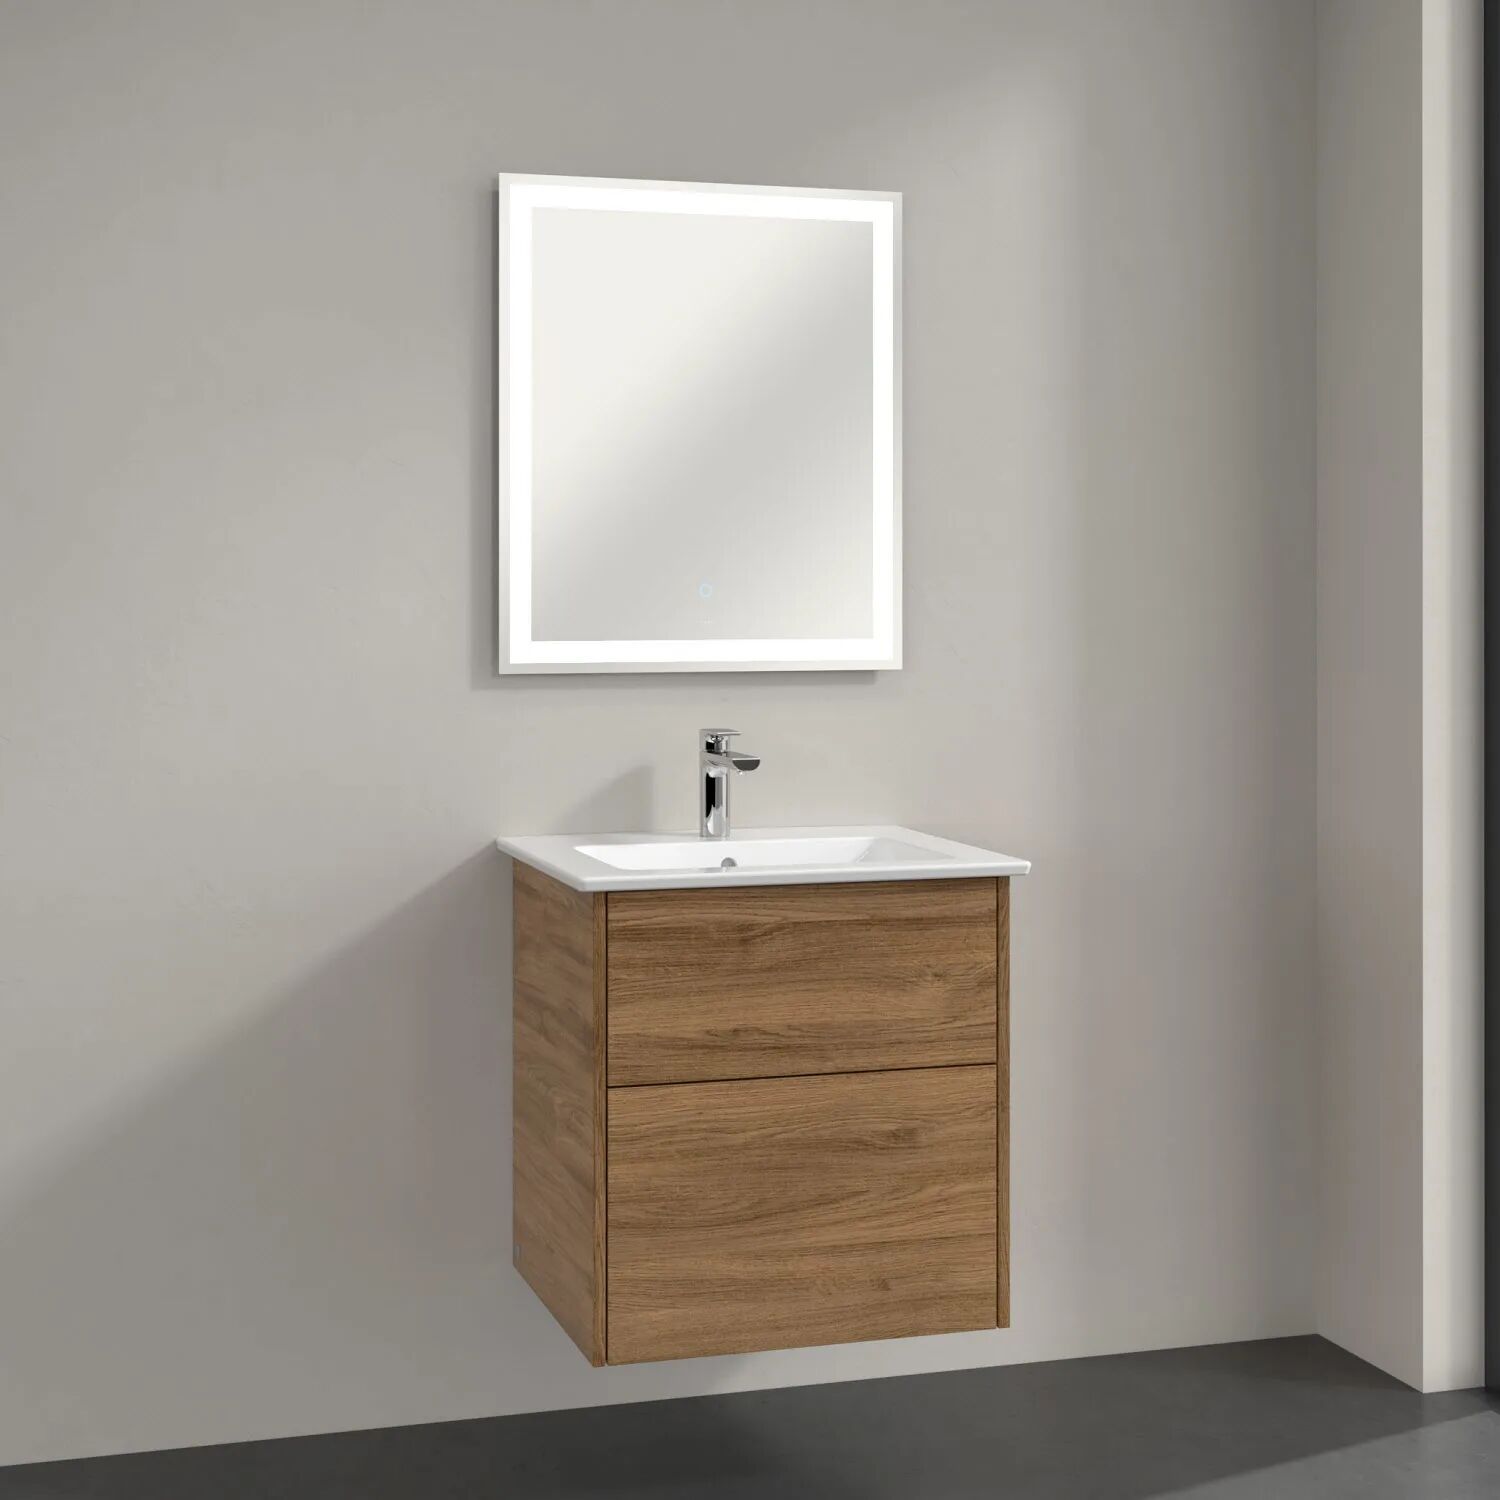 Villeroy & Boch Finero Waschtischunterschrank mit Waschtisch und Spiegel, 2 Auszüge, 60 cm  B: 60 T: 50,5 H: 16,5 cm kansas oak (direktbeschichtung)